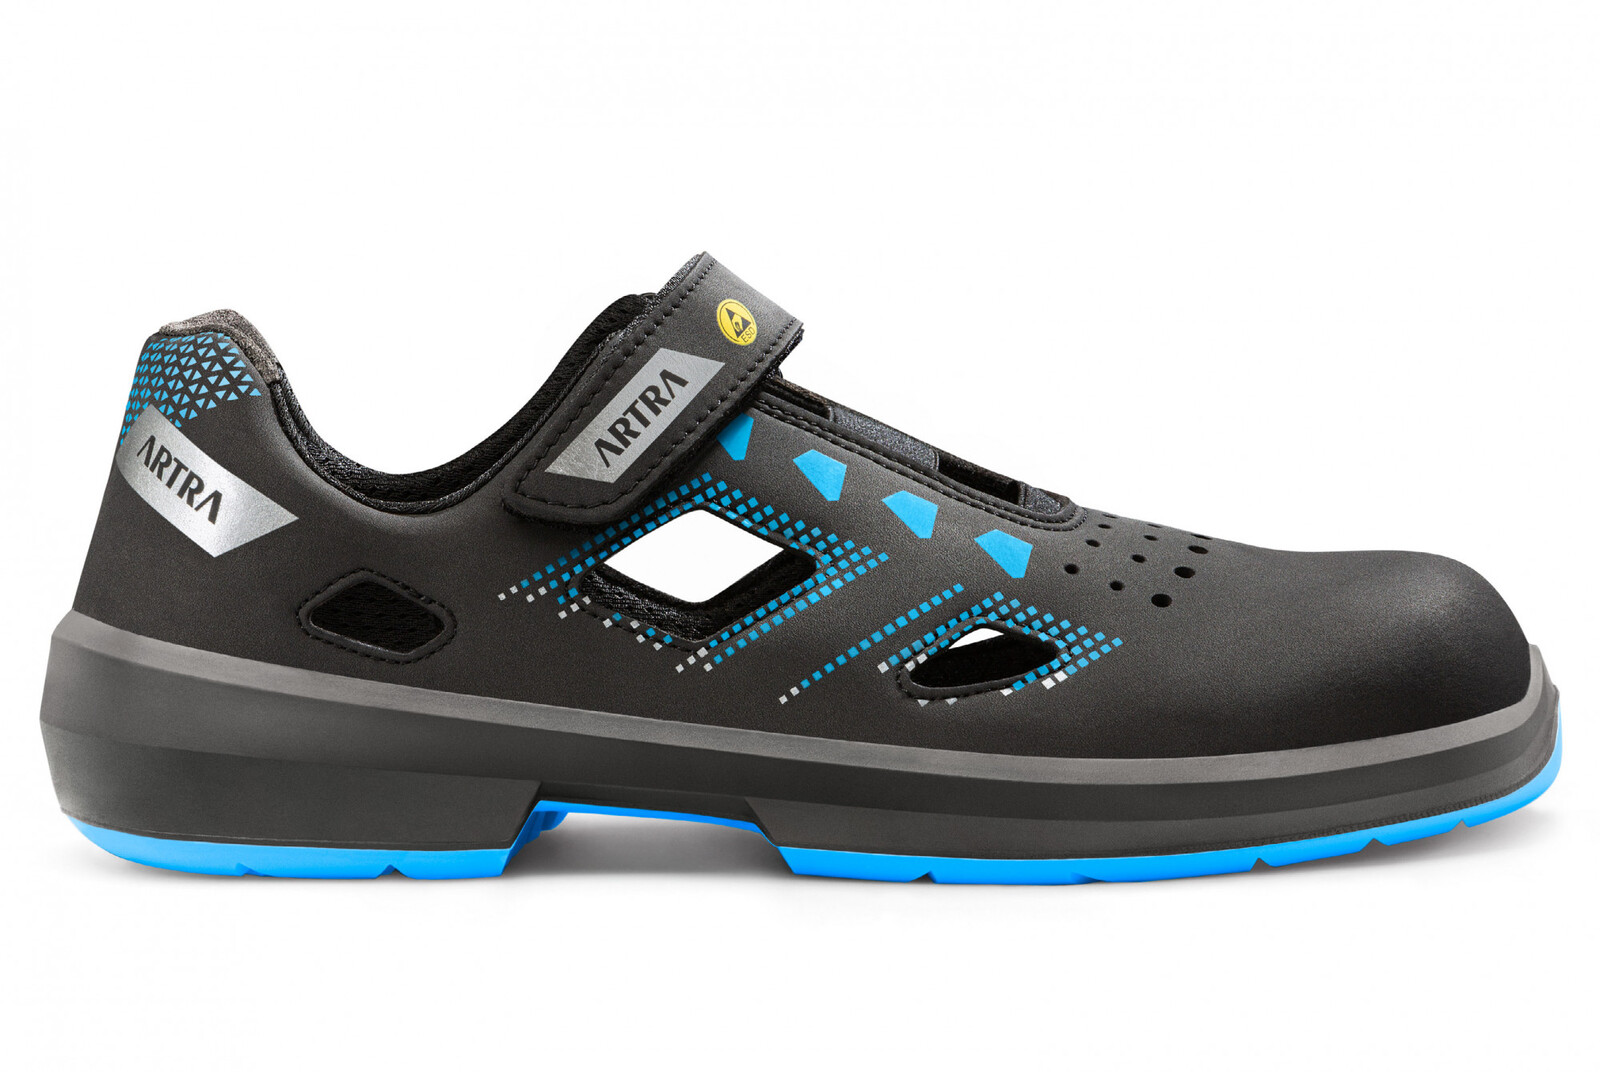 Bezpečnostné sandále Artra Arzo 805 619090 S1 SRC ESD MF - veľkosť: 47, farba: čierna/modrá